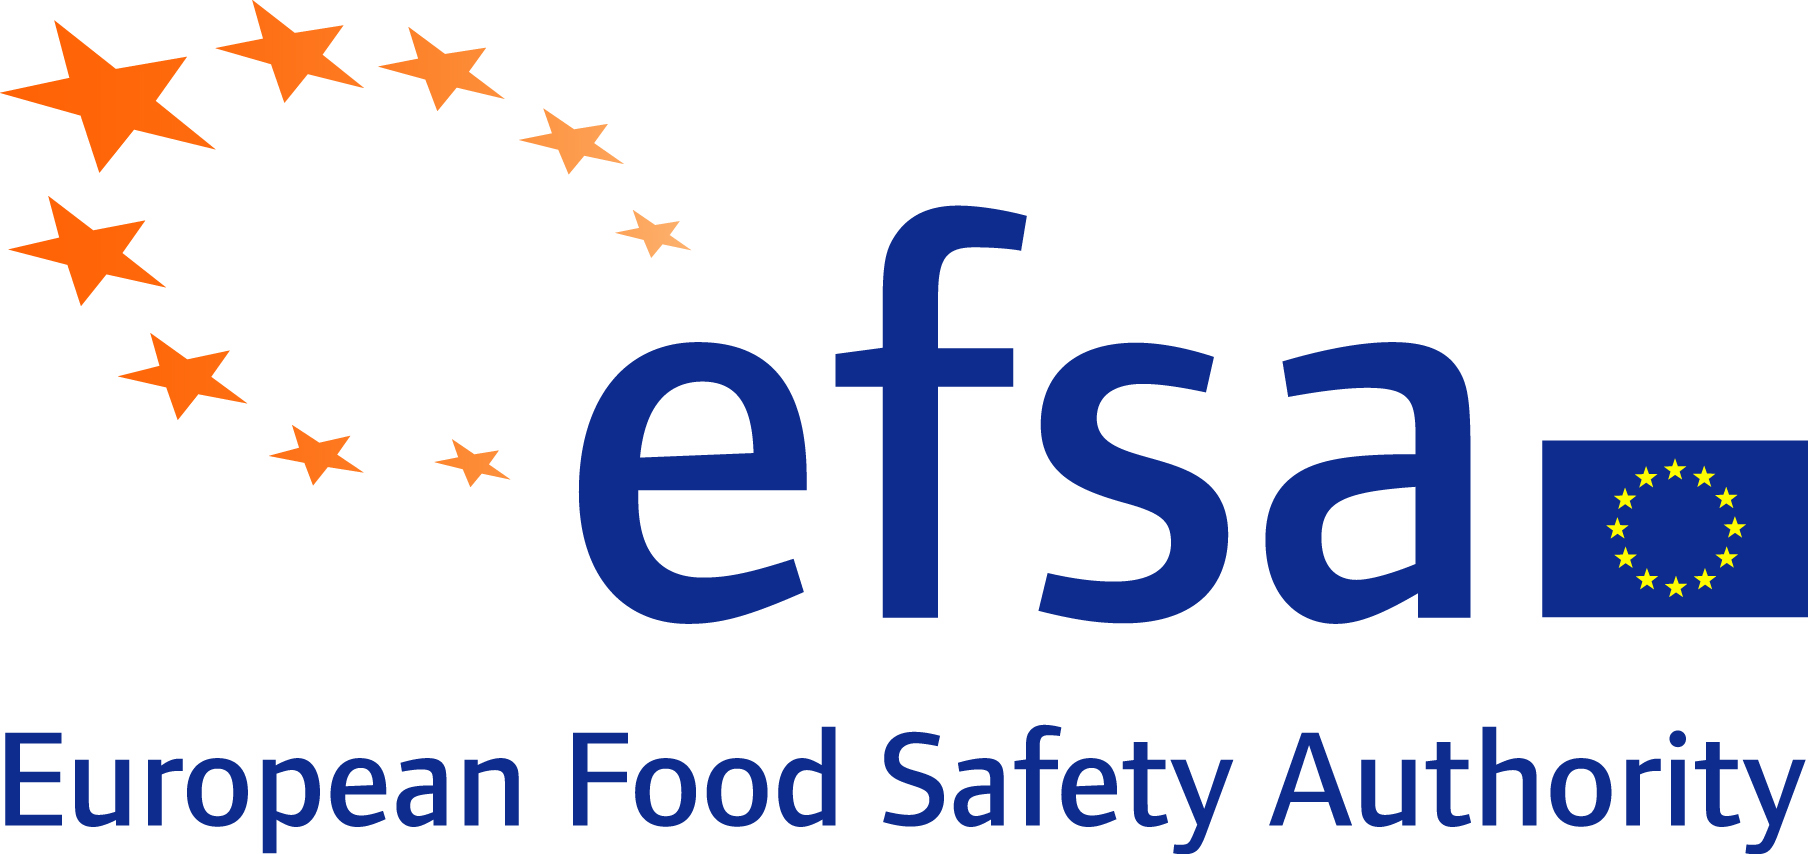 Vacante como Director Ejecutivo de la Autoridad Europea de Seguridad Alimentaria (EFSA)